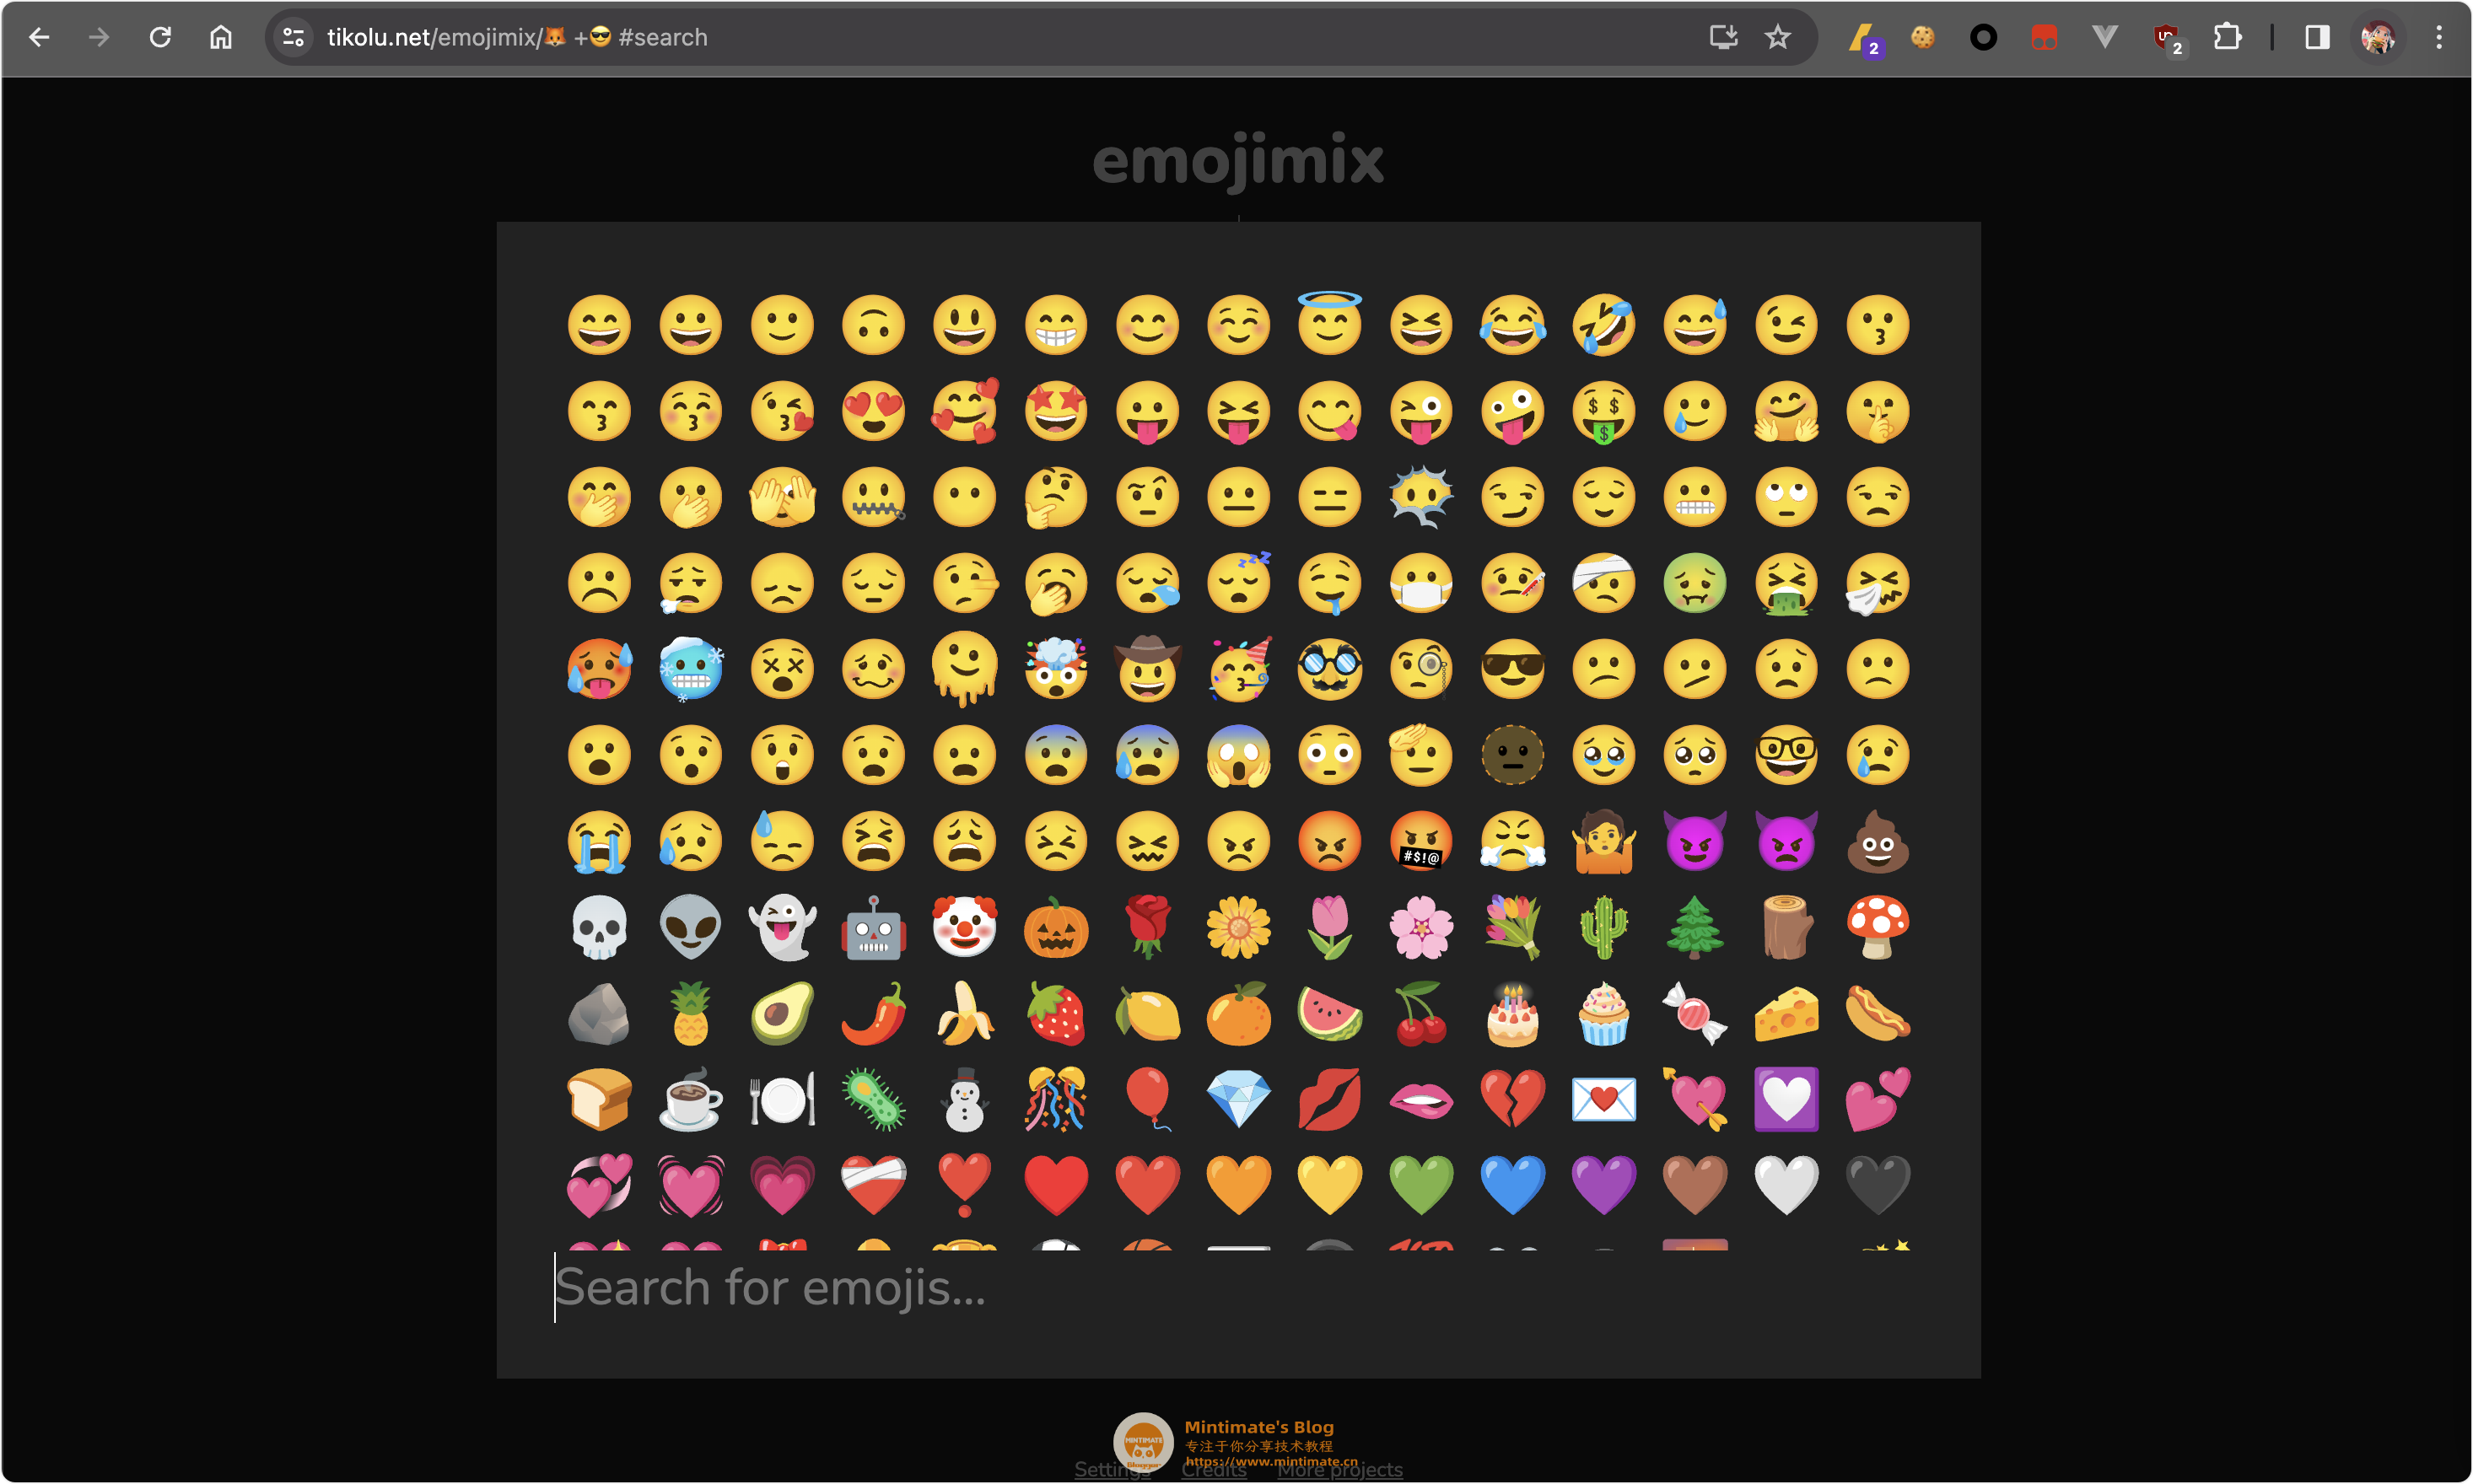 两个表情合成出新表情:复刻emoji kitchen!详解算法实现!